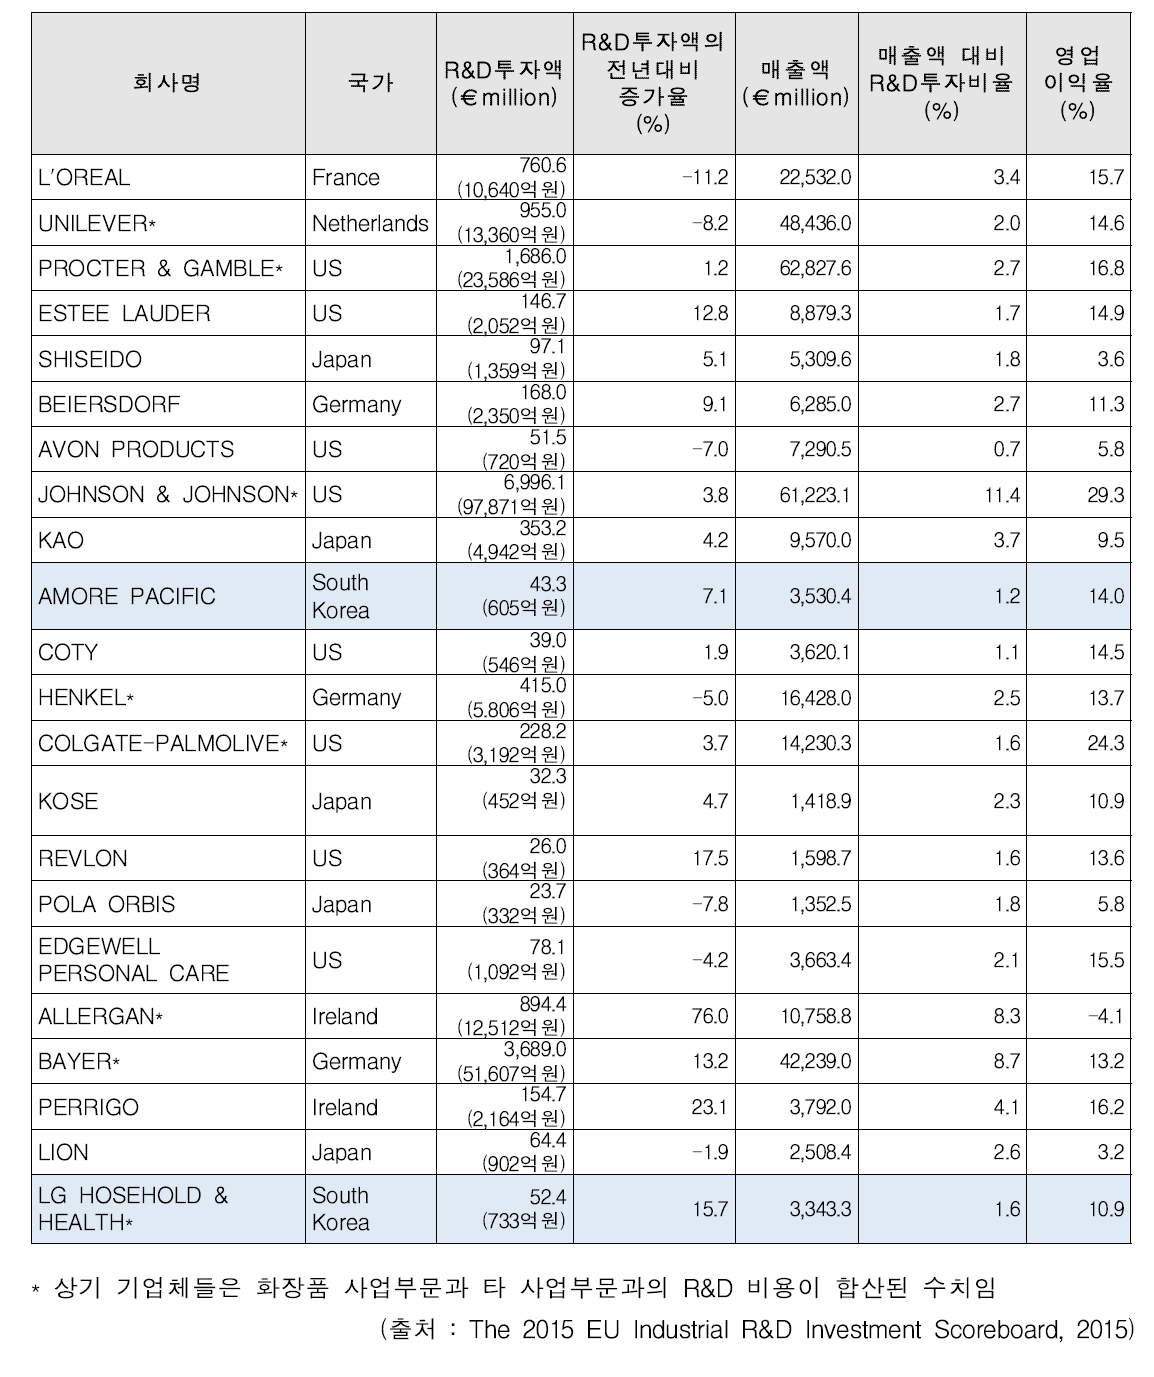 주요 화장품 기업의 R&D 투자액 (2014)